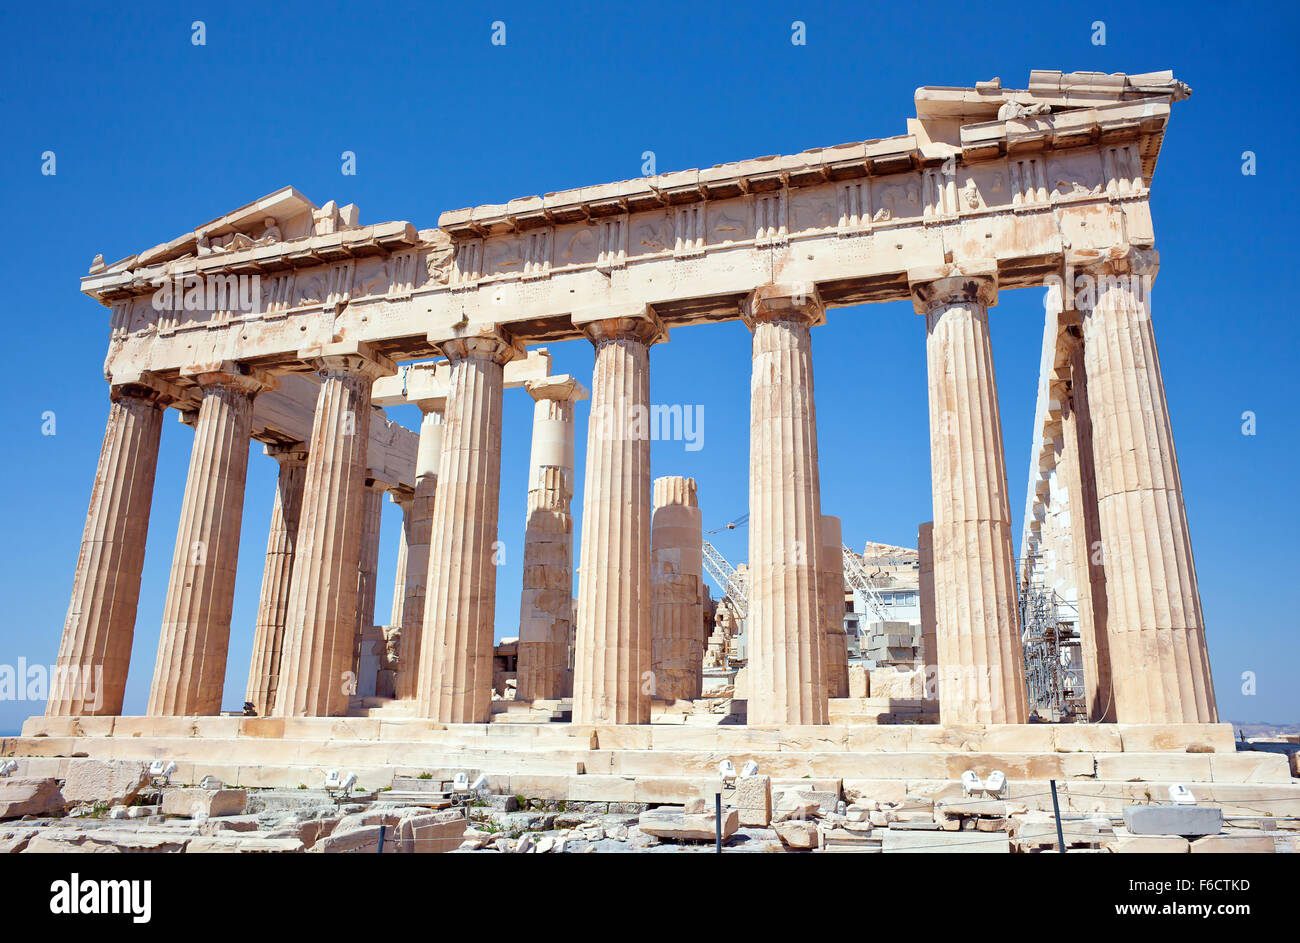 Facade of the Parthenon temple on the Athenian Acropolis, Greece Stock Photo